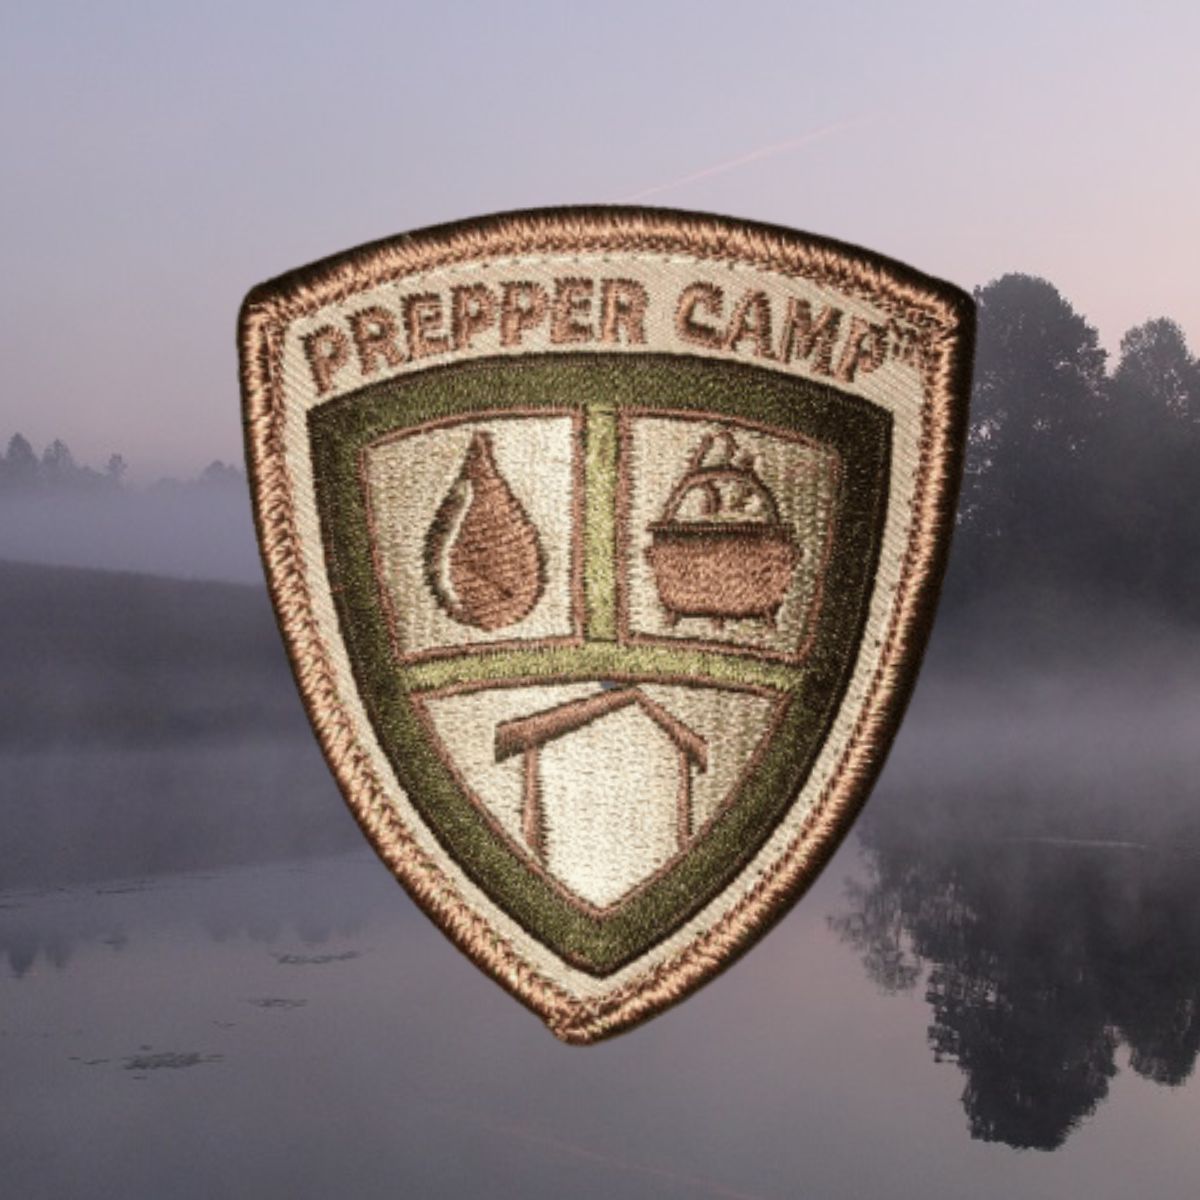 Prepper Camp